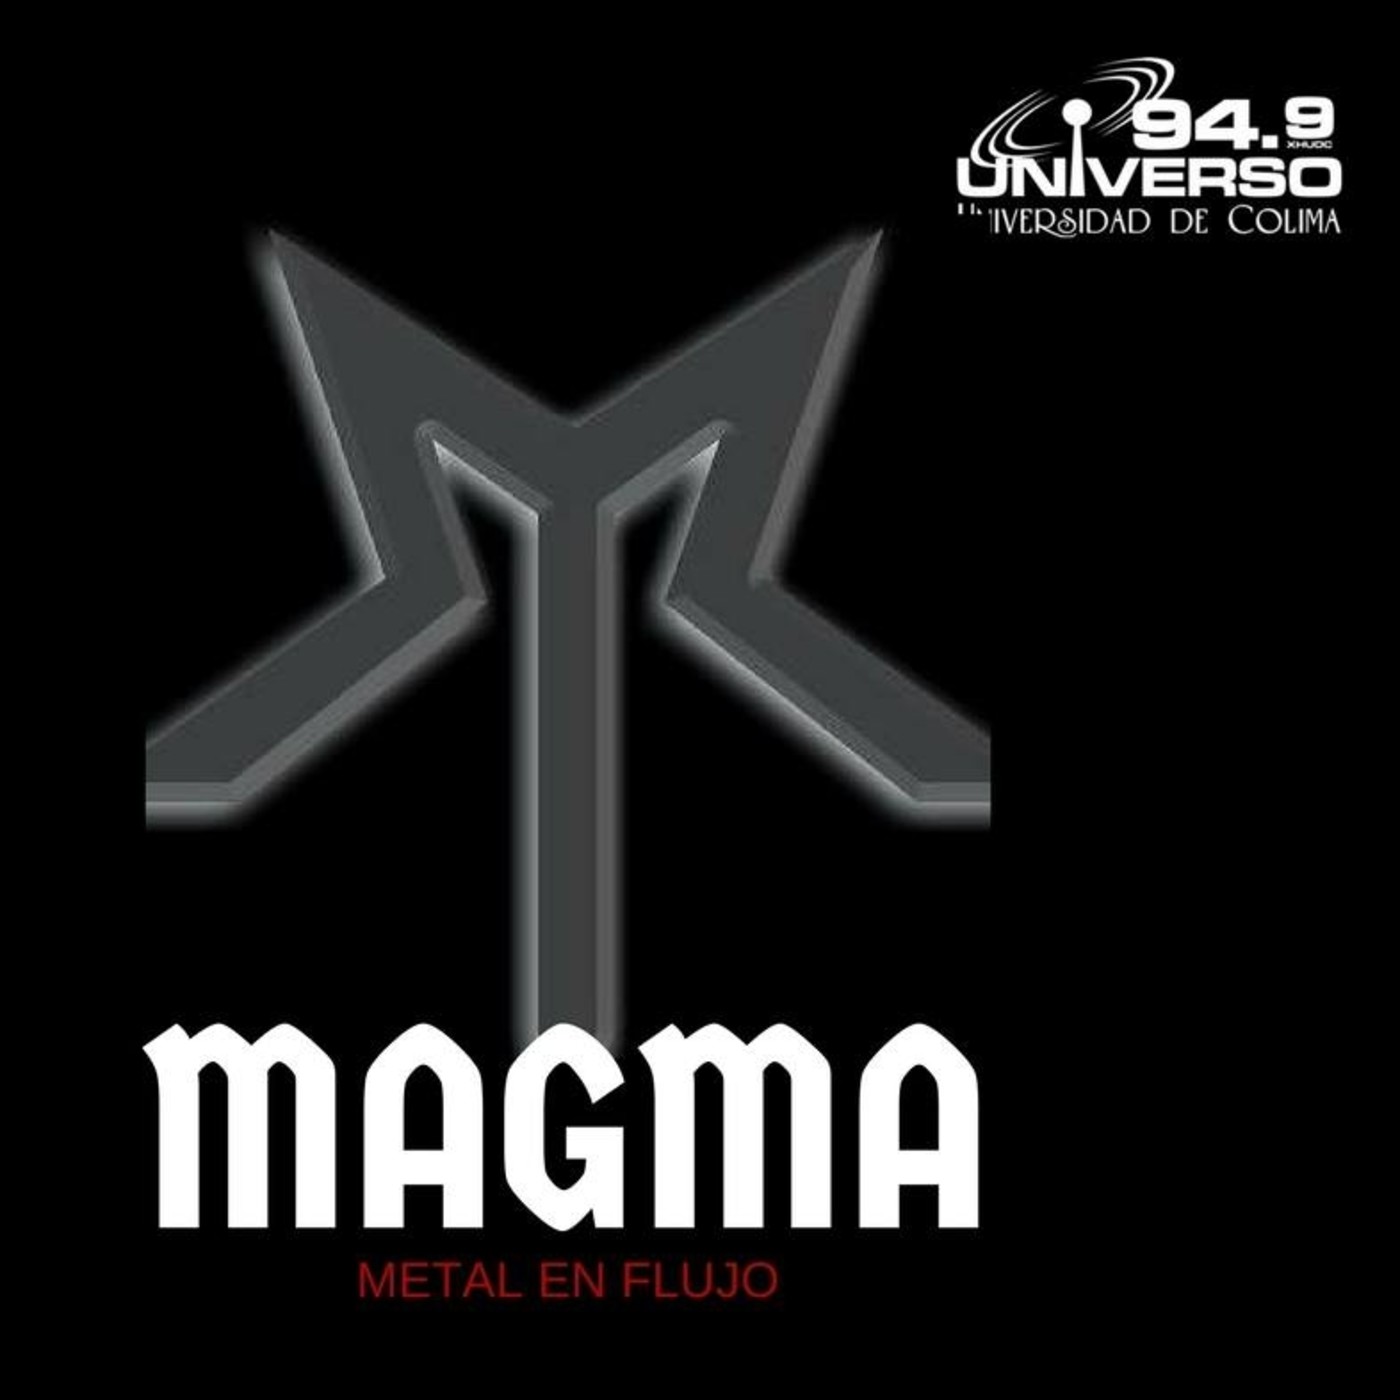 Magma-25 agosto 2018-1